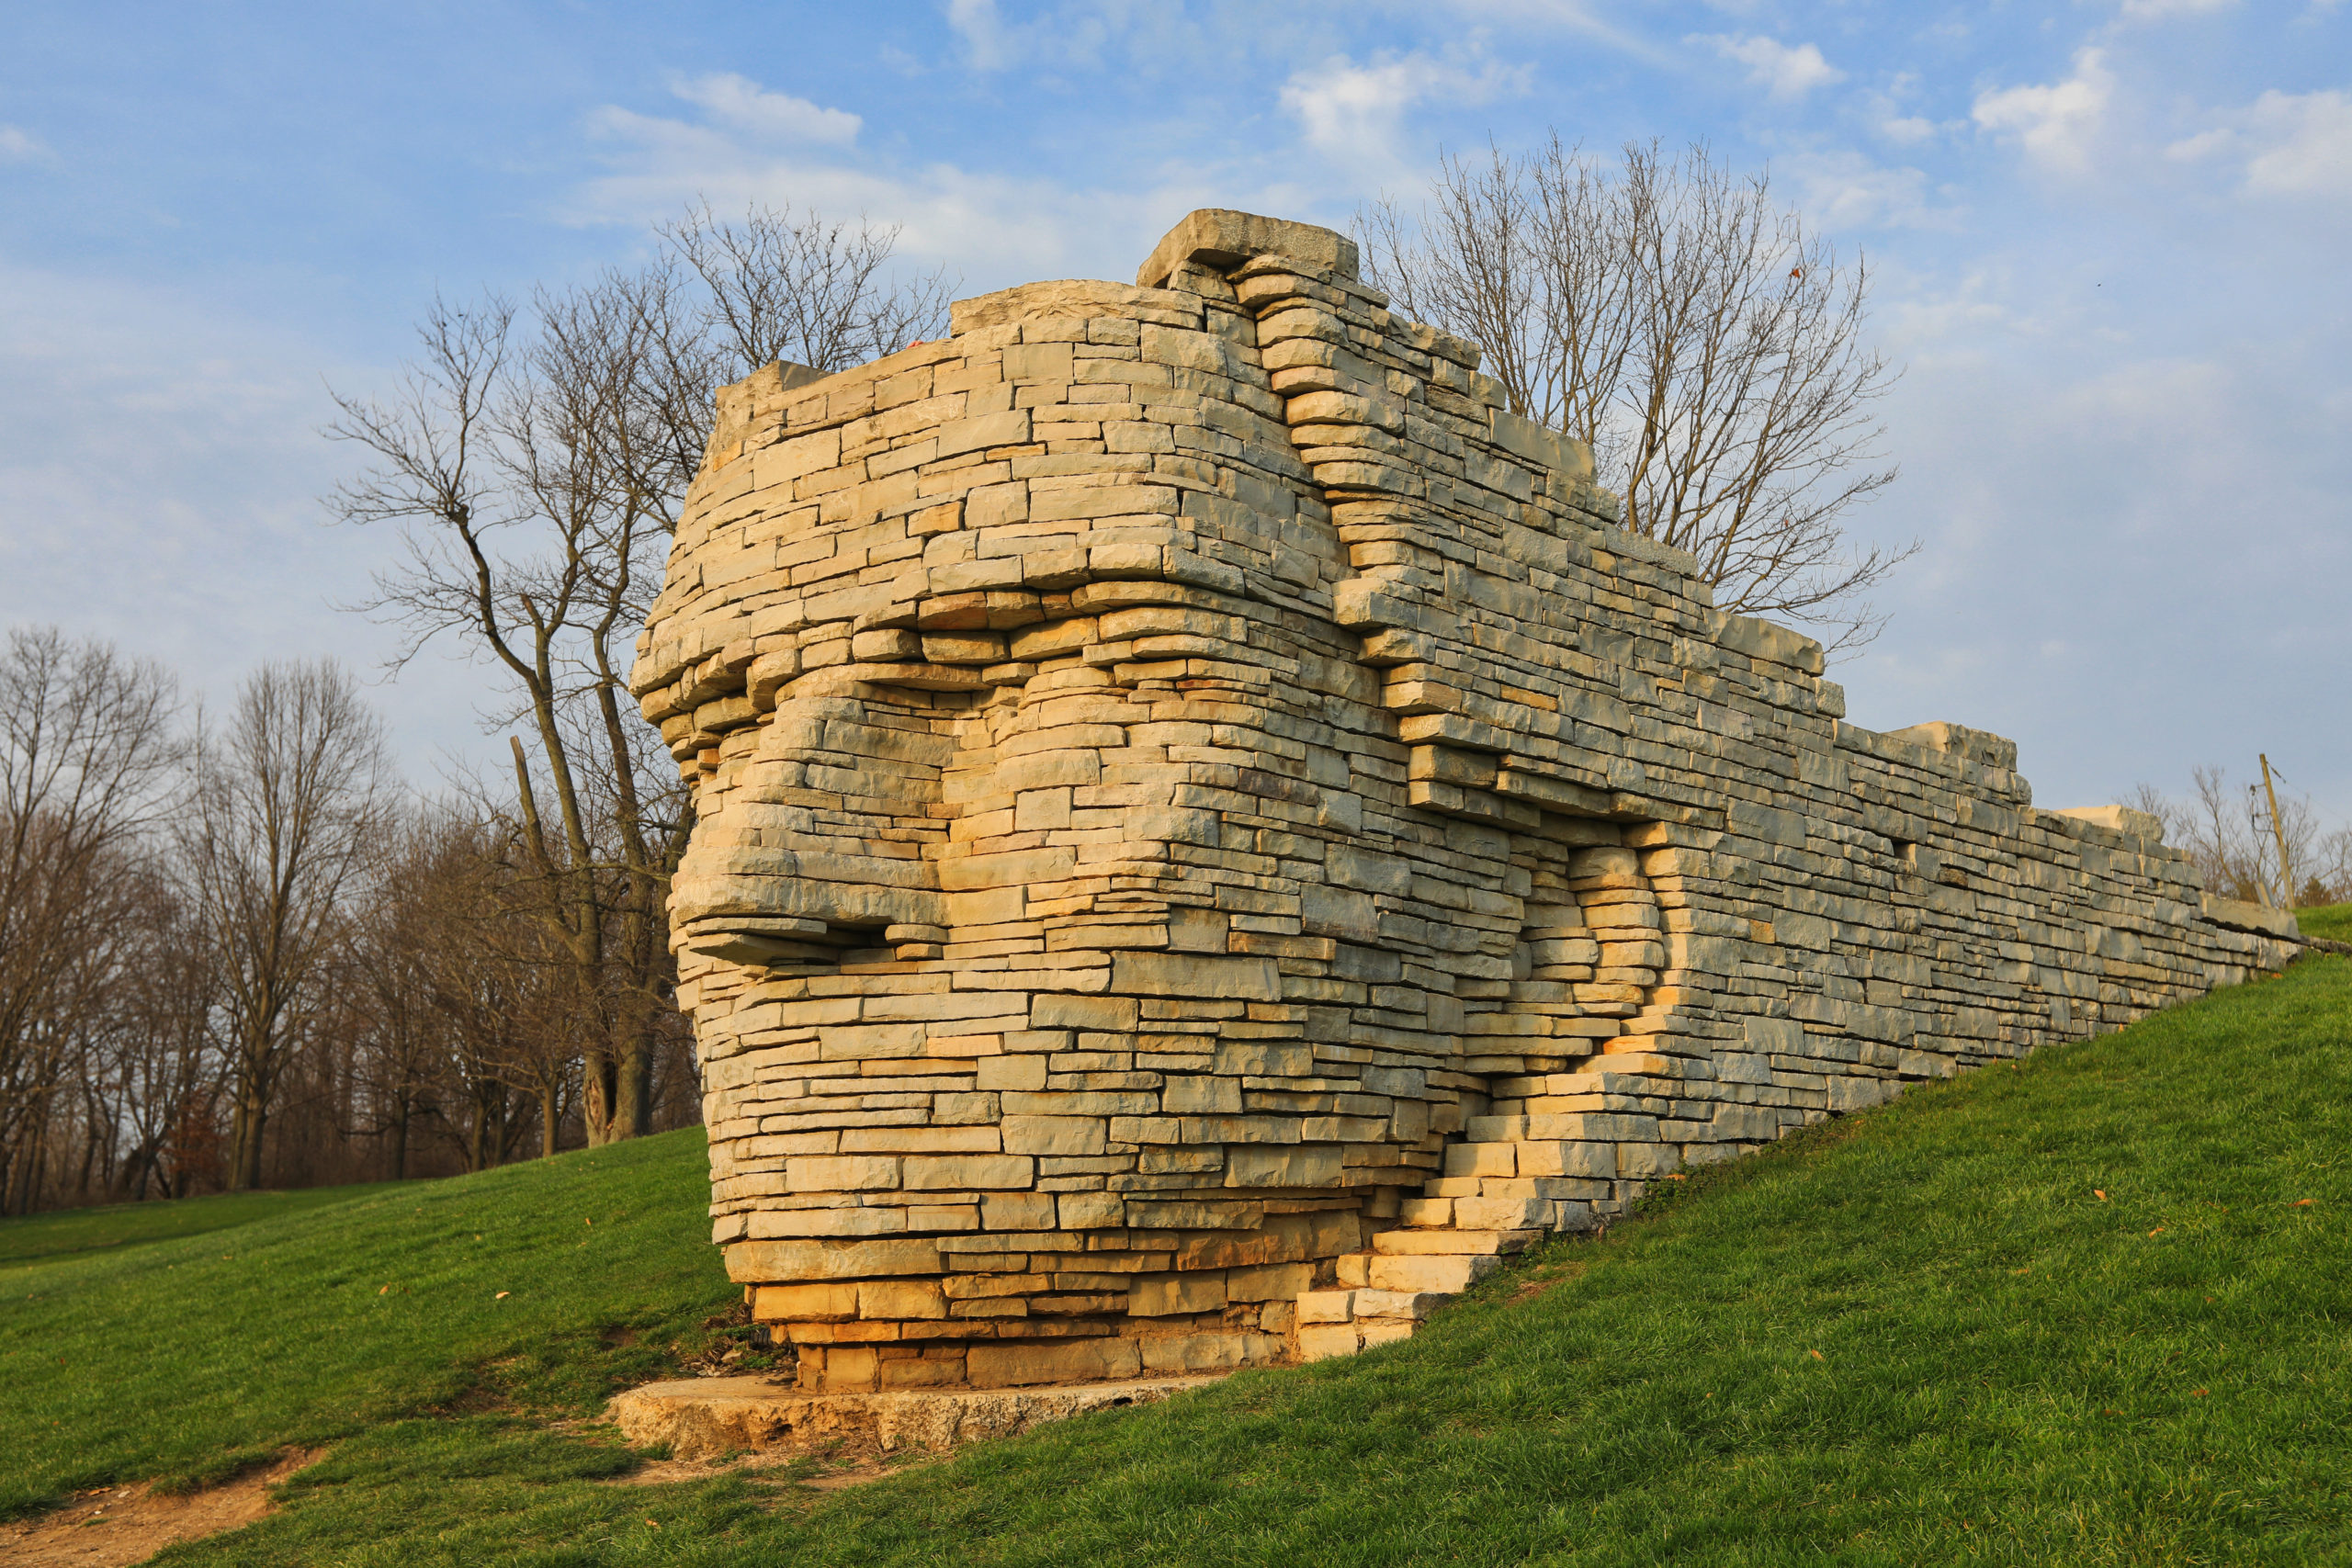 Cheif Leatherlips Sculpture Dublin Ohio